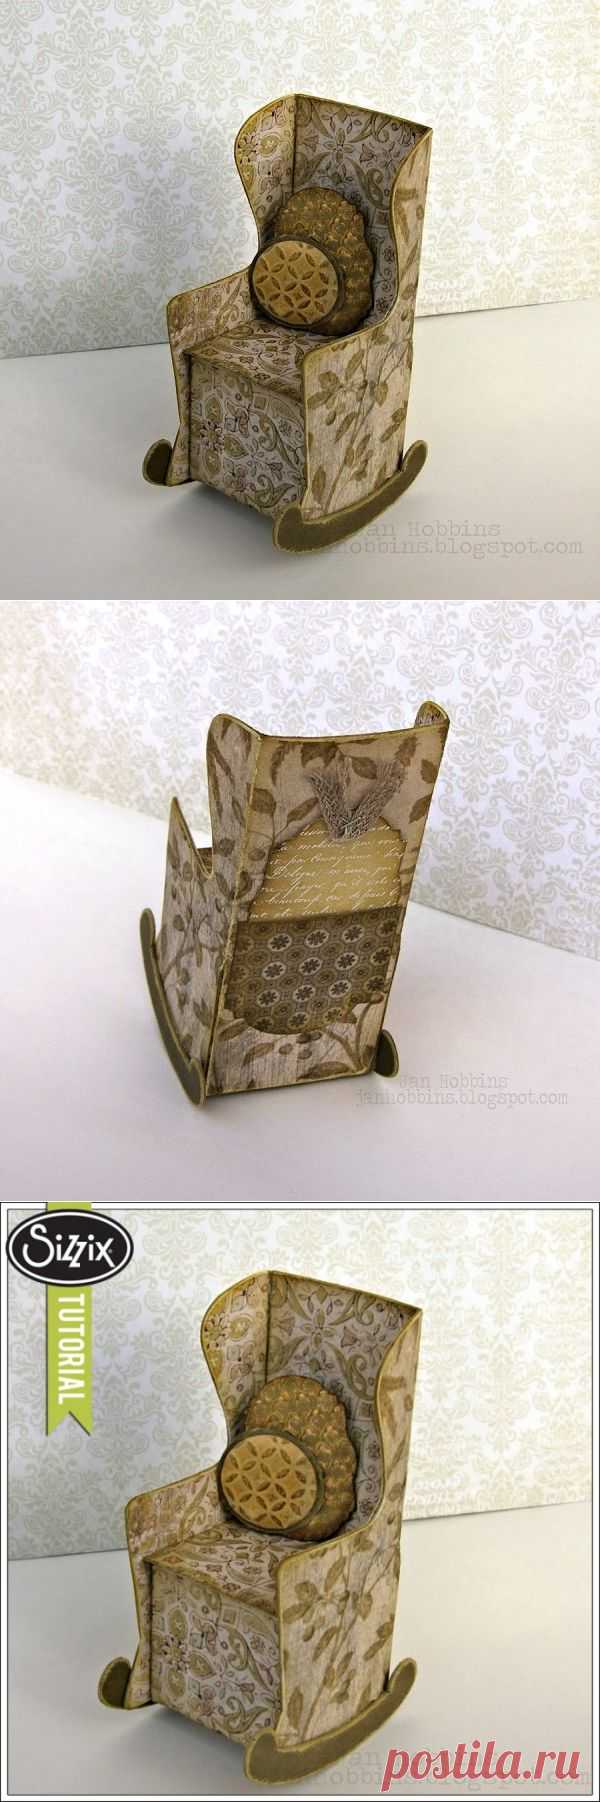 Скрапбукинг. Кресло-качалка из бумаги.